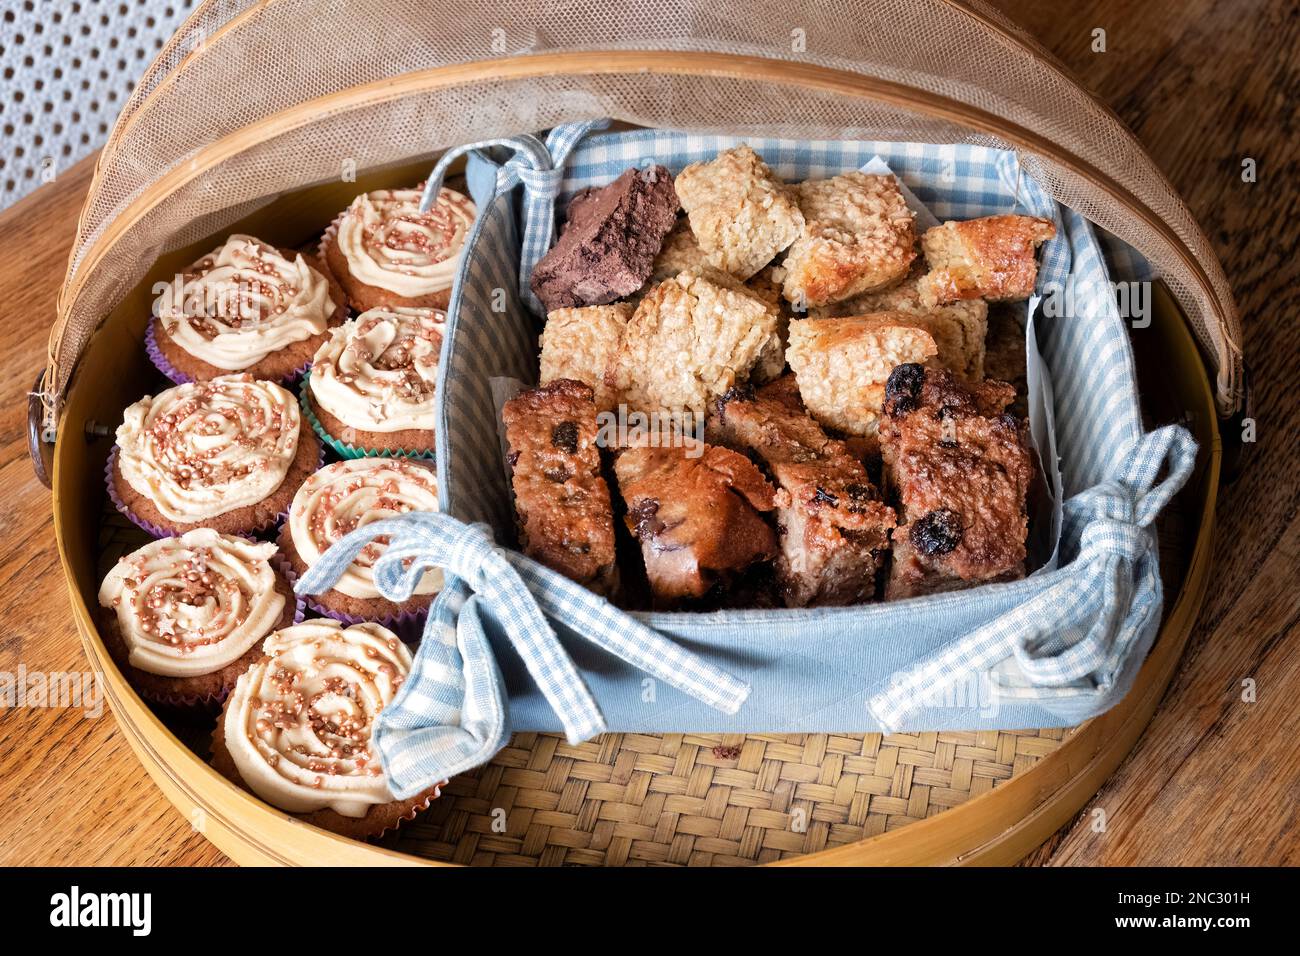 Eine Auswahl an leckeren Kuchenspezialitäten, darunter Tassenkuchen, Pfannkuchen und Brotpudding. Alle sind in einem vernetzten Bambusfutter ausgestellt Stockfoto